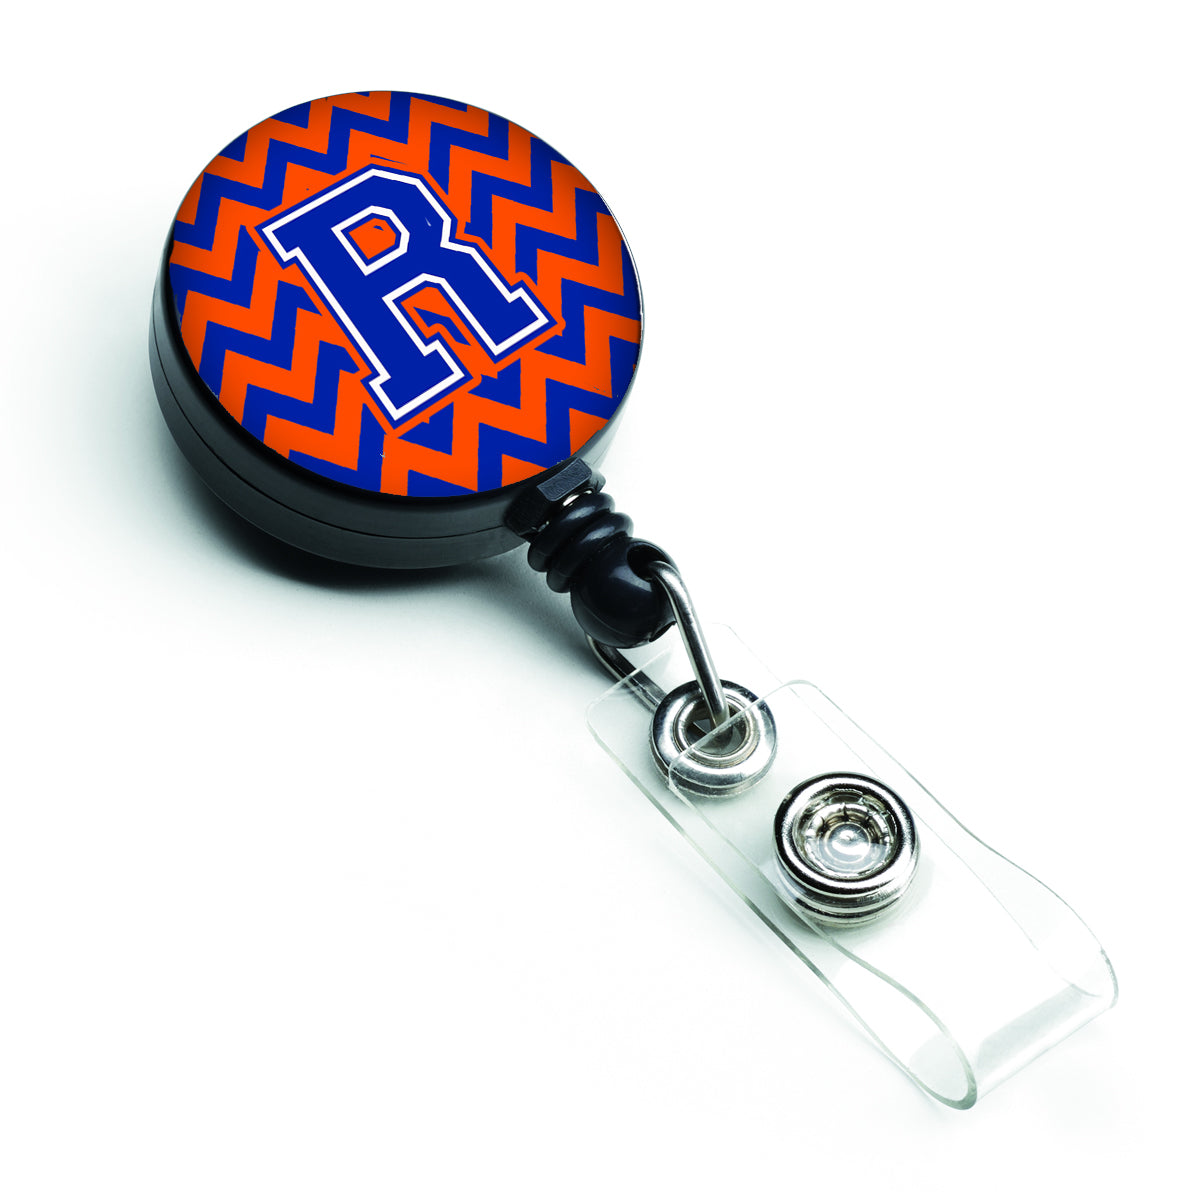 Bobine de badge rétractable Lettre R Chevron Orange et Bleu CJ1044-RBR